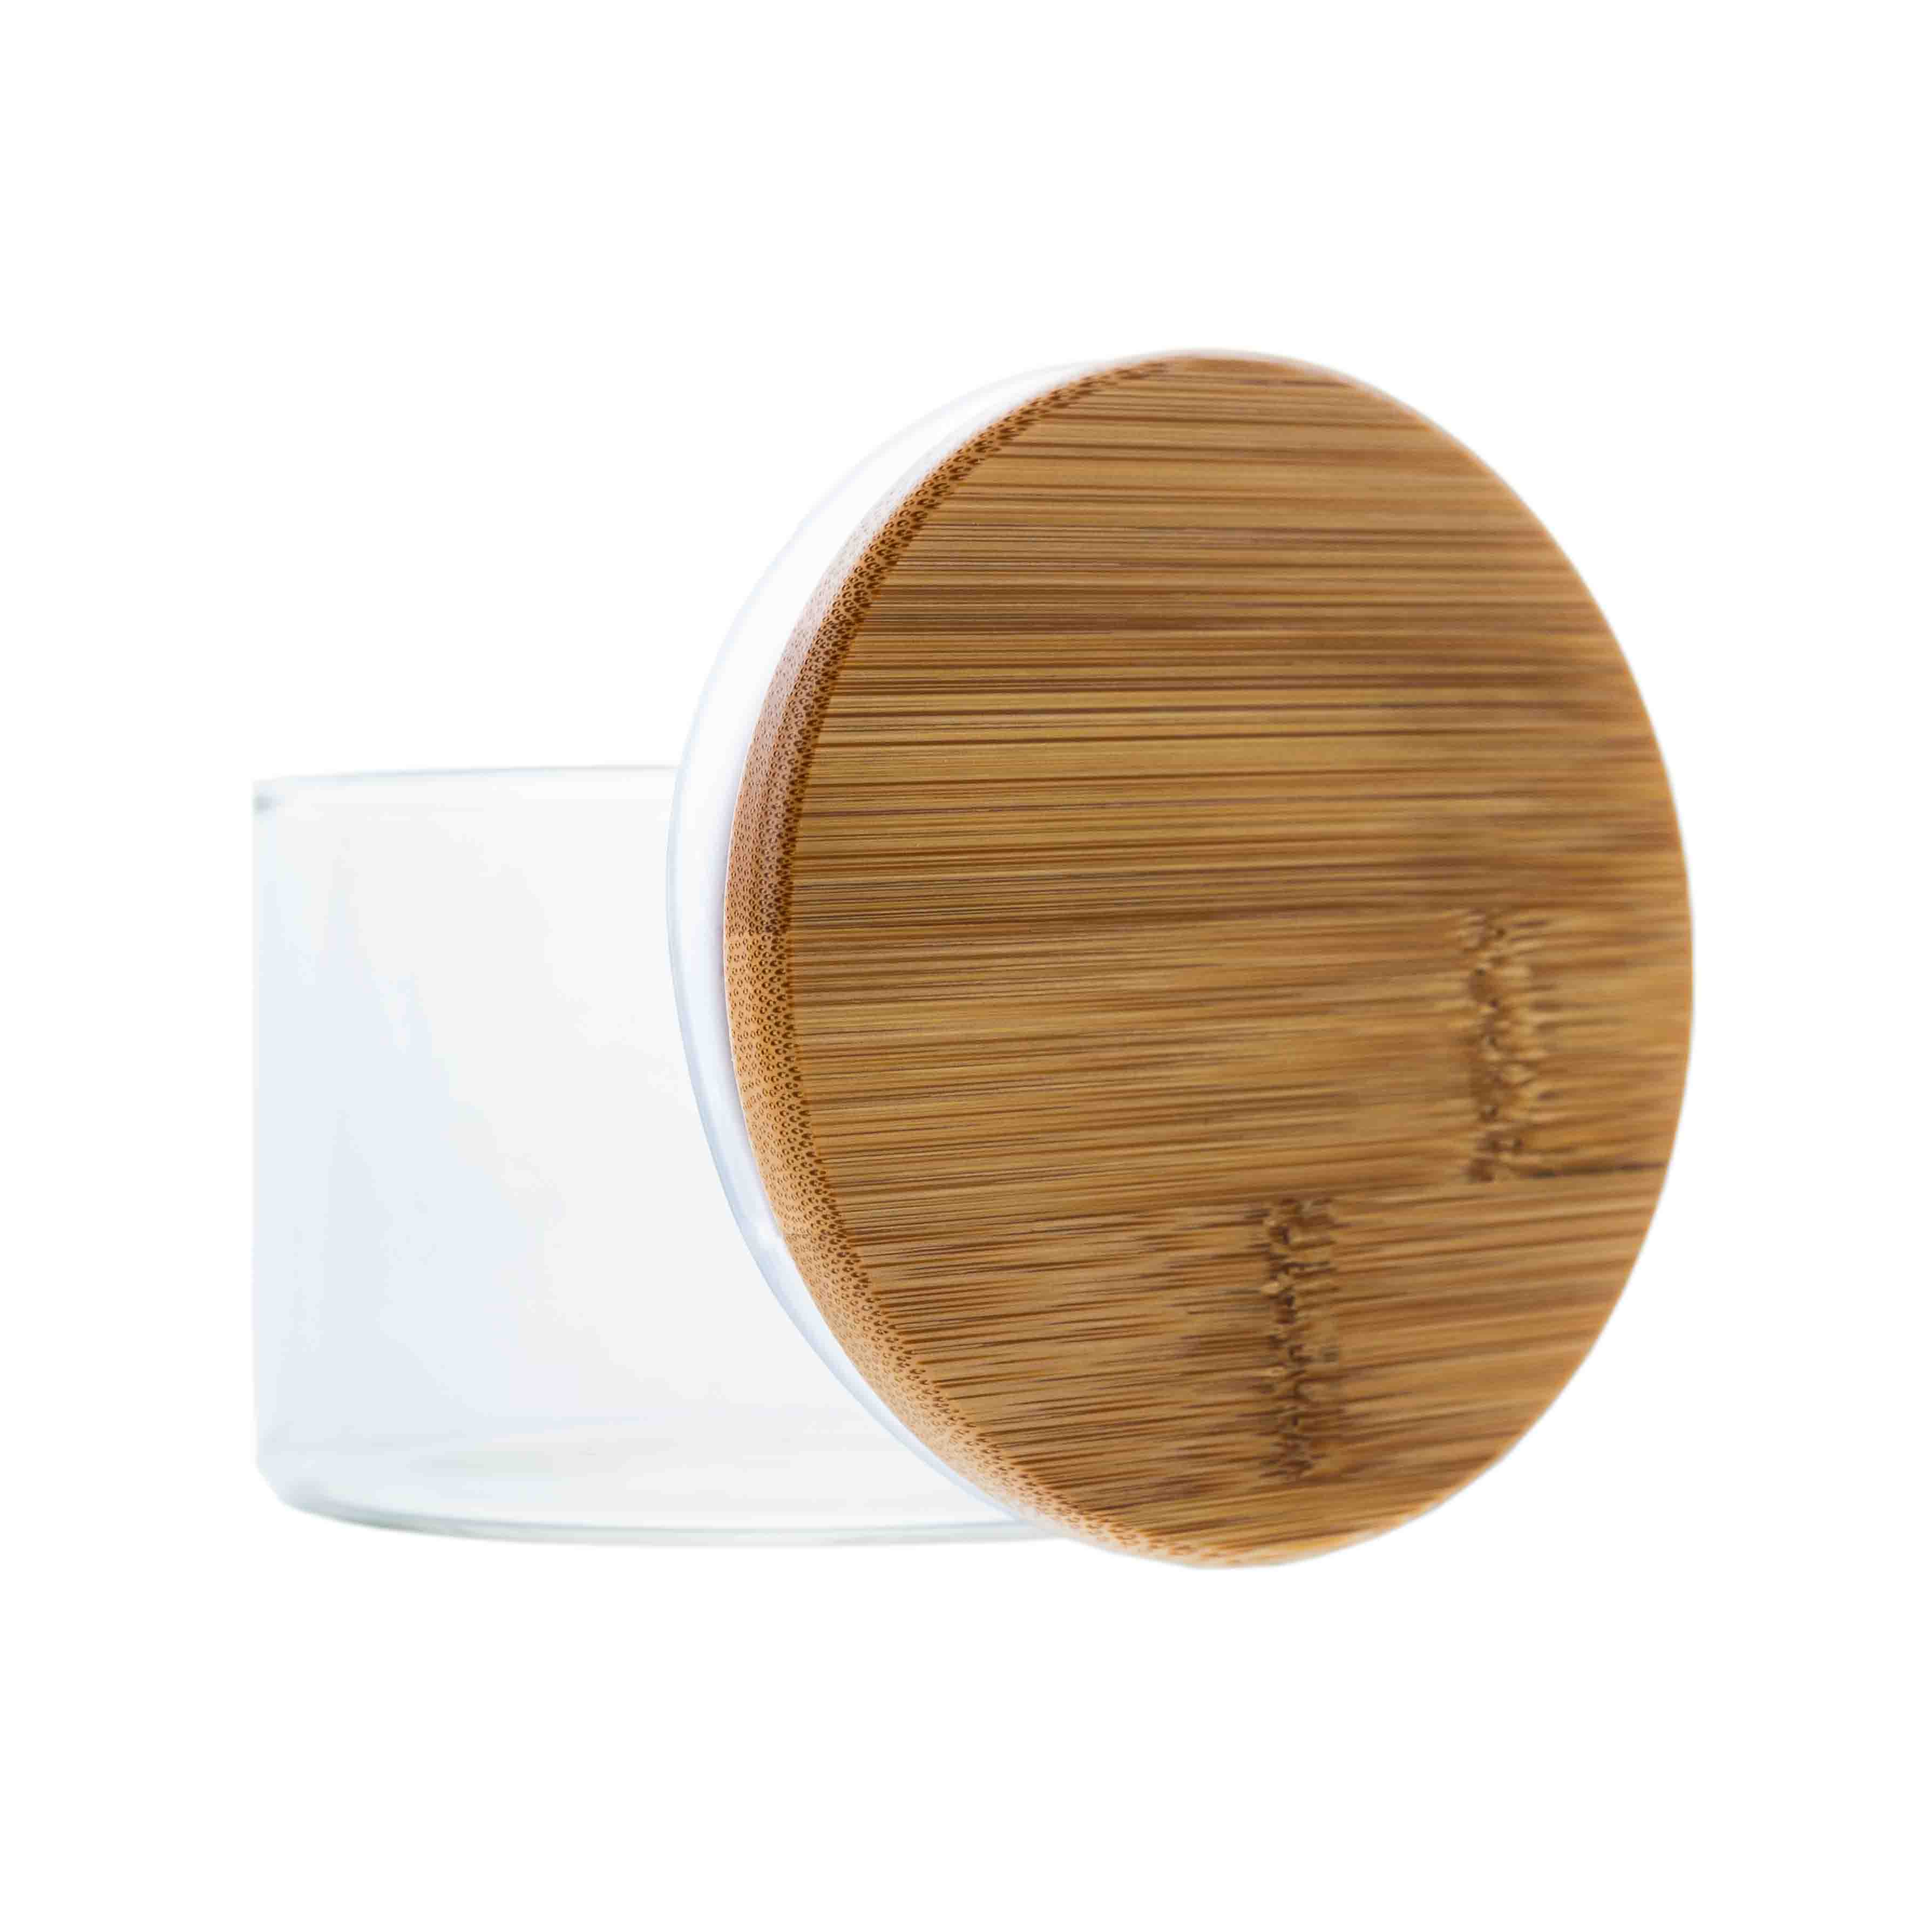 Borosilikatglas - Vorratsglas 250 ml mit Bambusdeckel